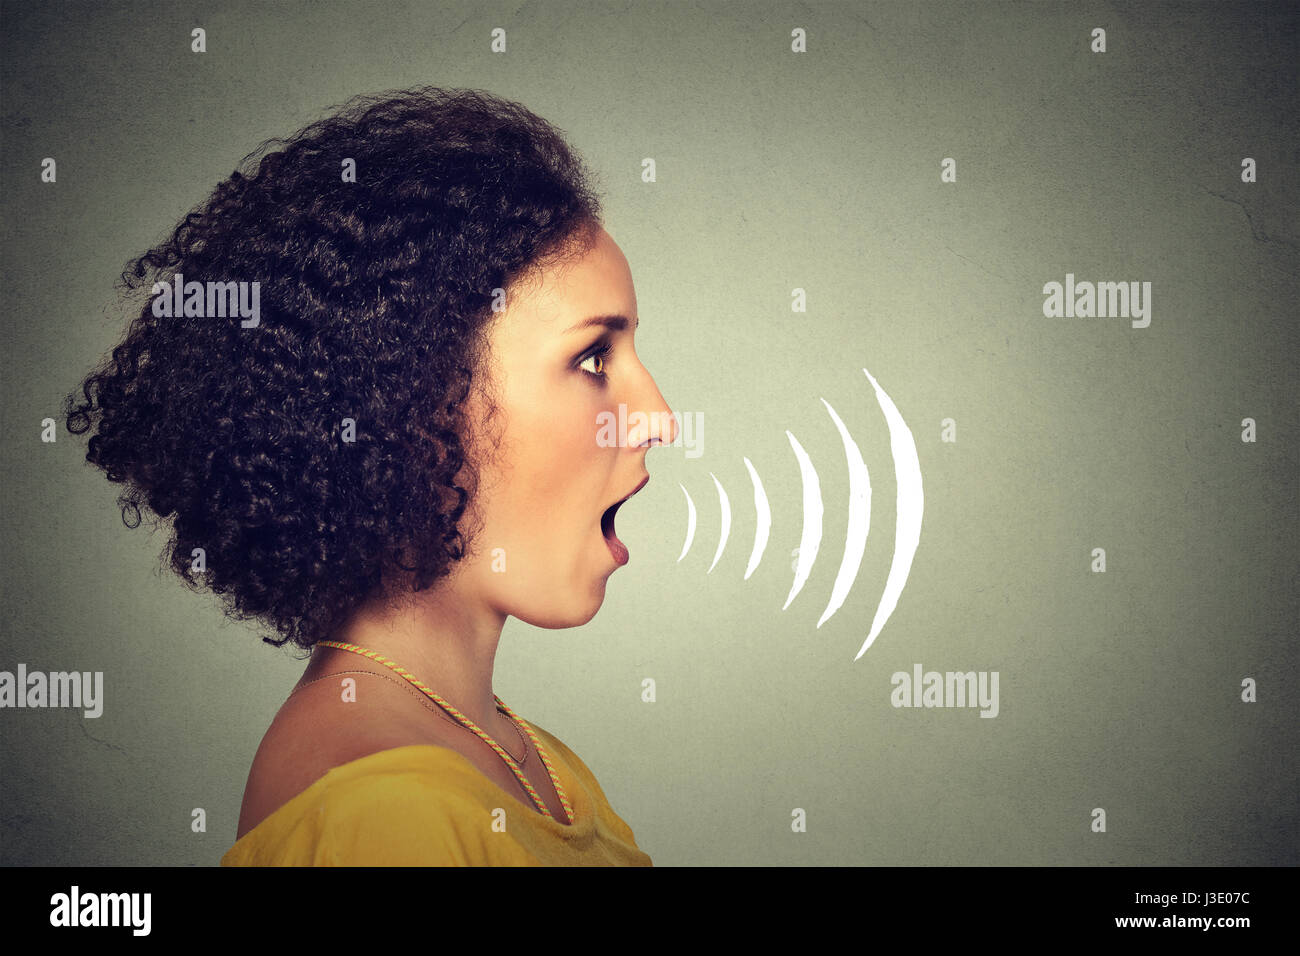 Seite Profil junge Frau im Gespräch mit Schallwellen, die aus ihrem Mund auf graue Wand Hintergrund isoliert. Menschlichen Gesichtsausdrücke Stockfoto